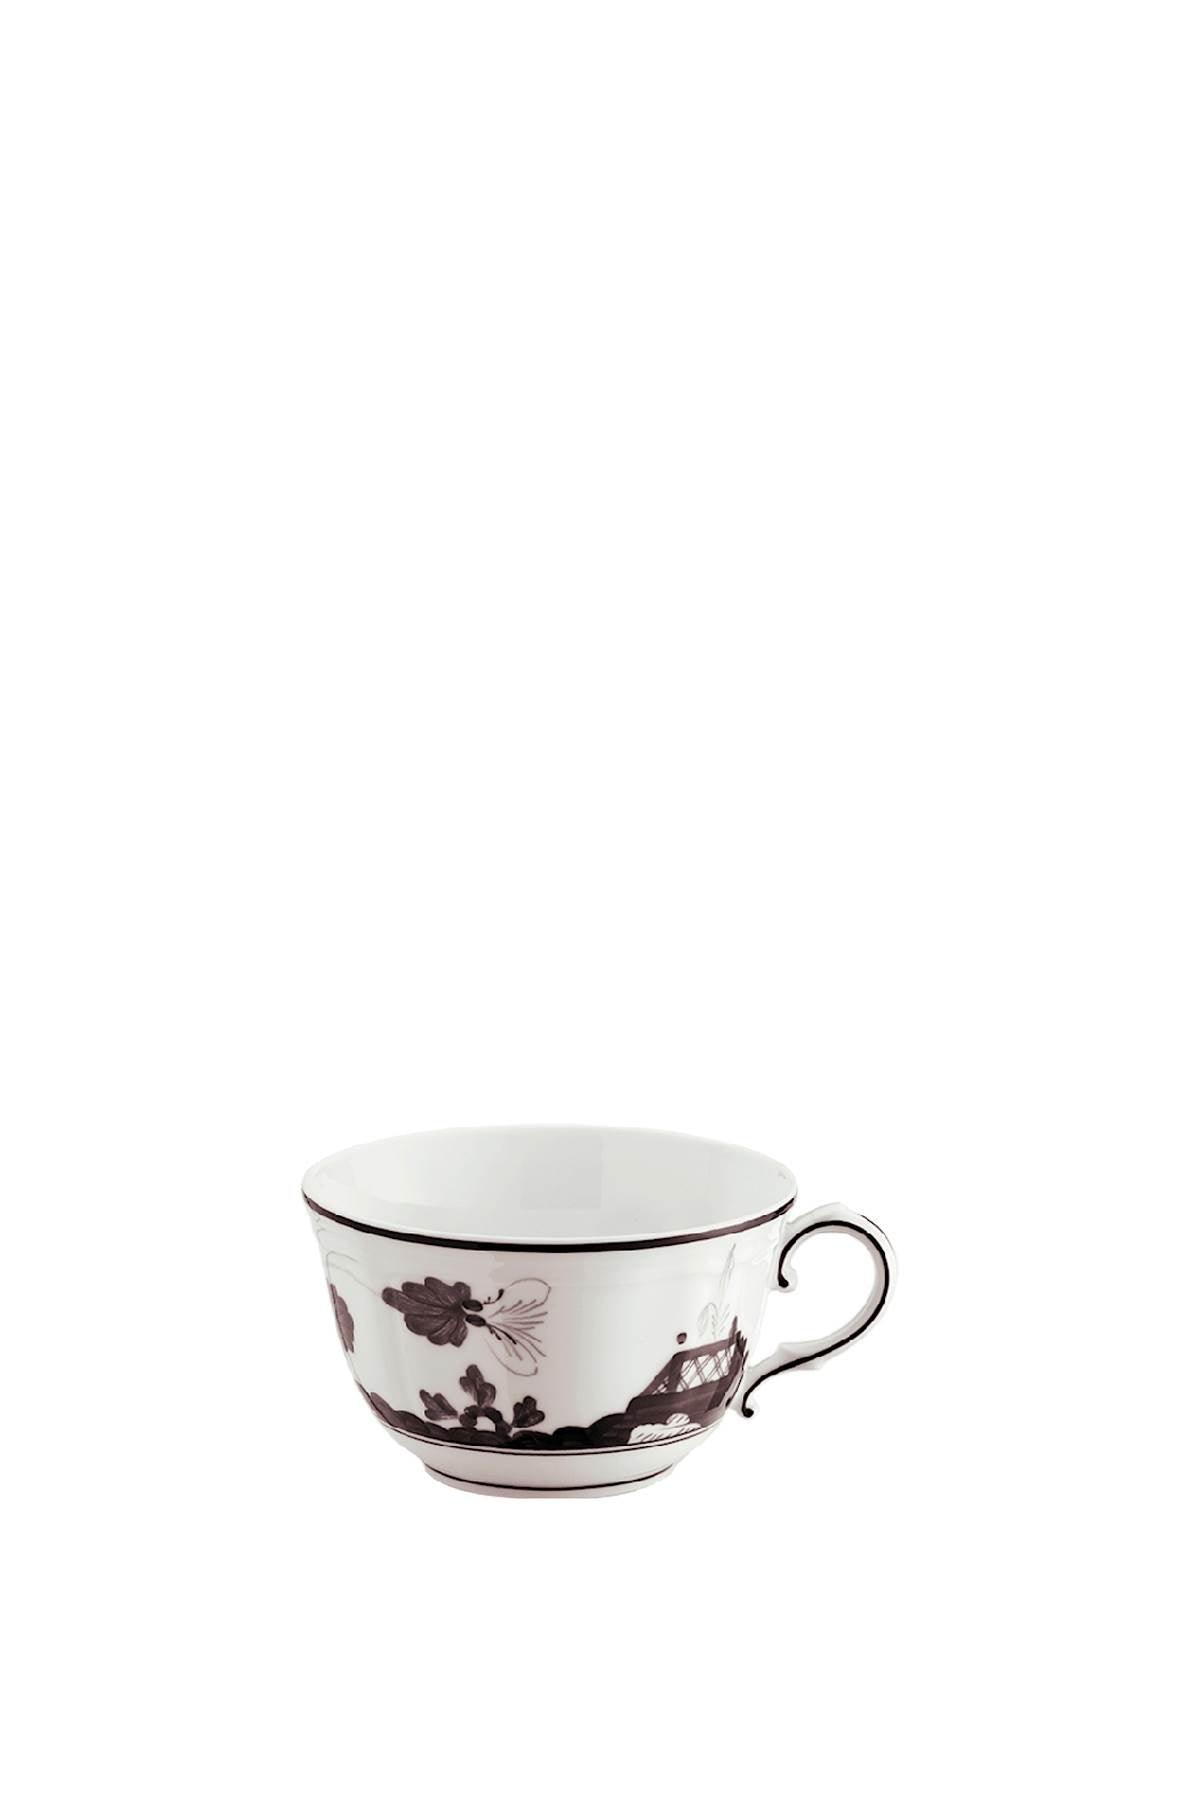 Ginori 1735 'Oriente Italiano' Tea Cup - JOHN JULIA